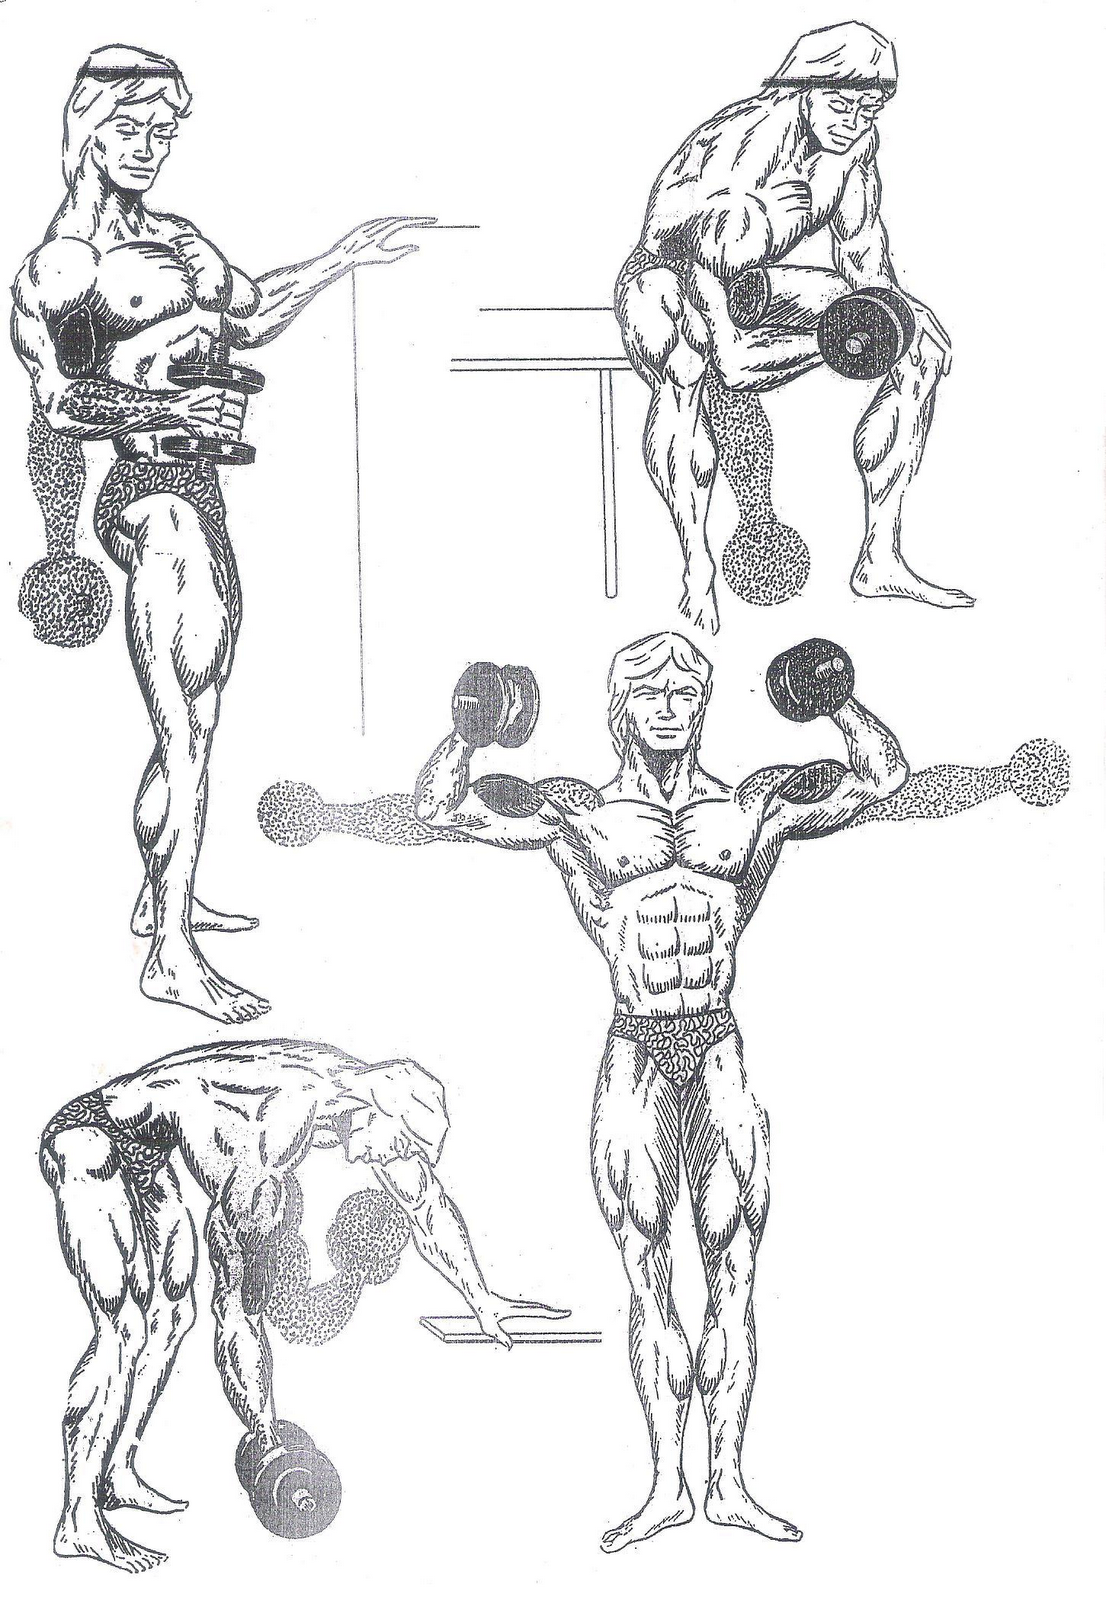 Упражнения на бицепс тр цепс гантели. Базовые упражнения на бицепс и трицепс для мужчин. Упражнения бицепс трицепс спина. Упражнения с гантелями на бицепс и трицепс для мужчин.